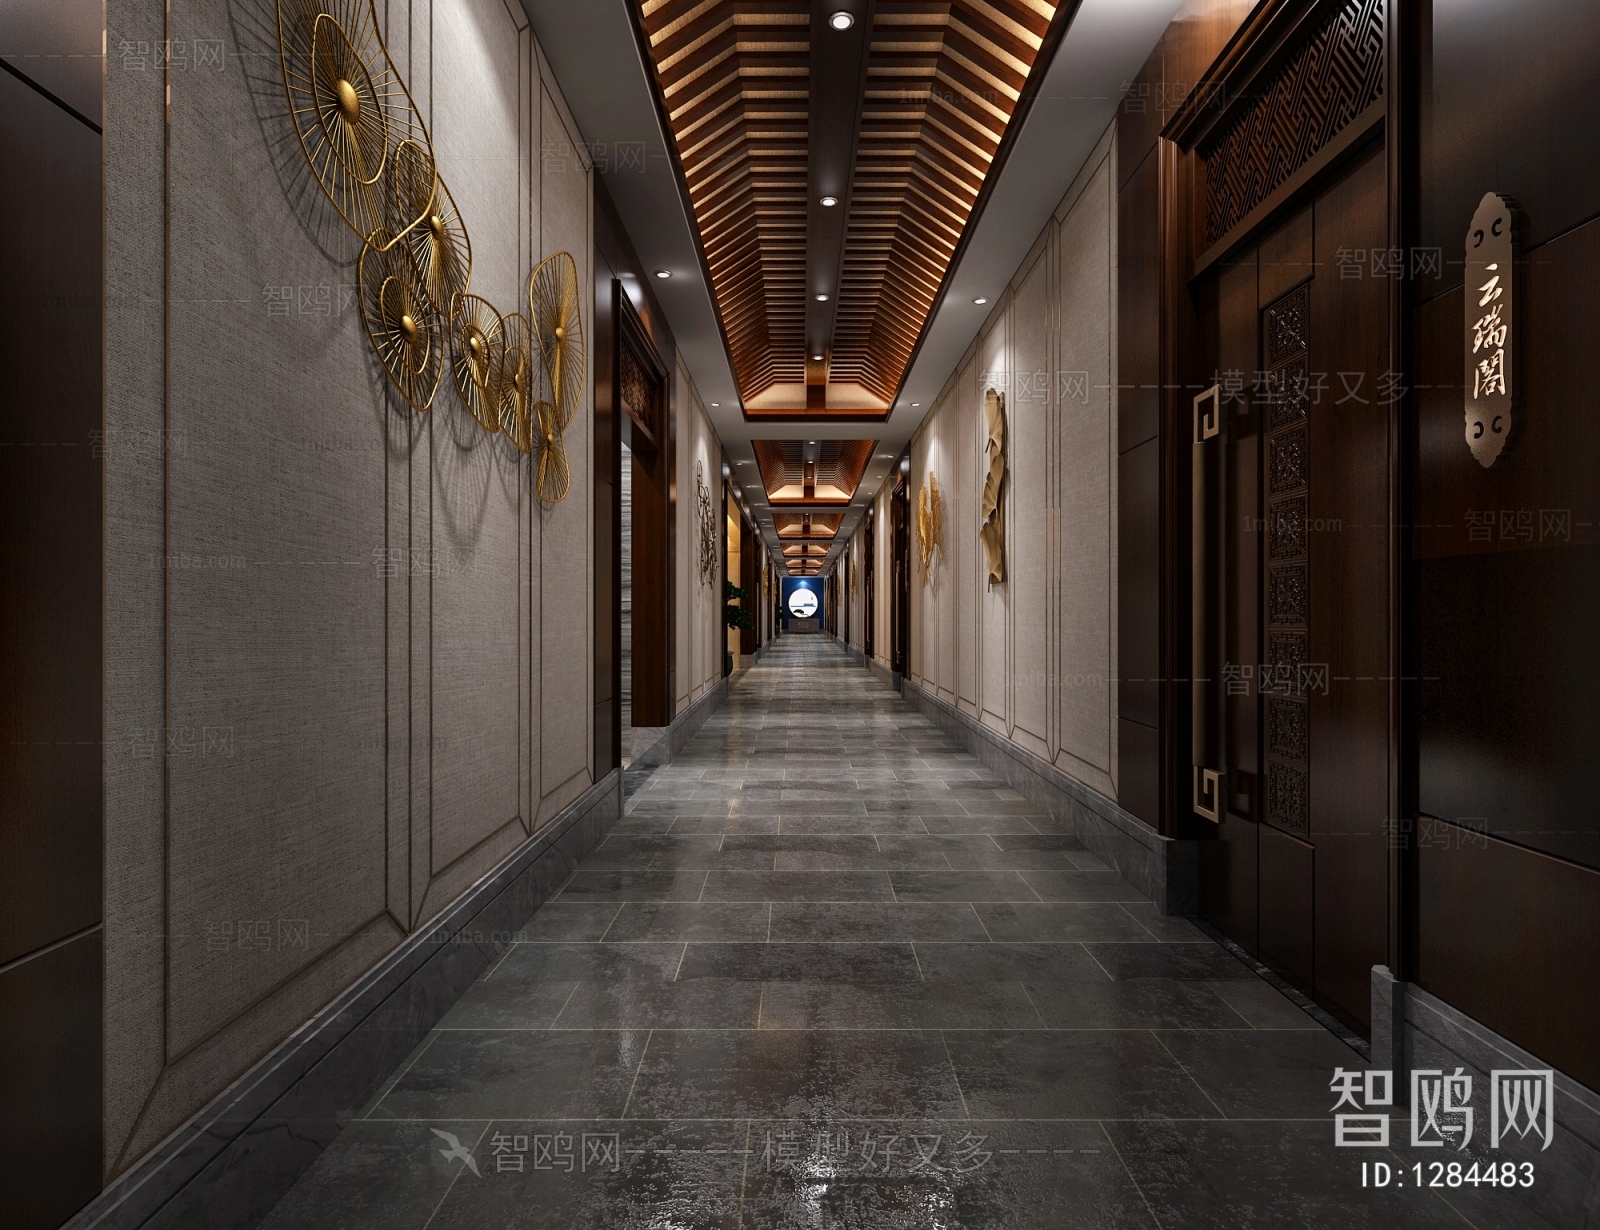 Chinese Style Corridor